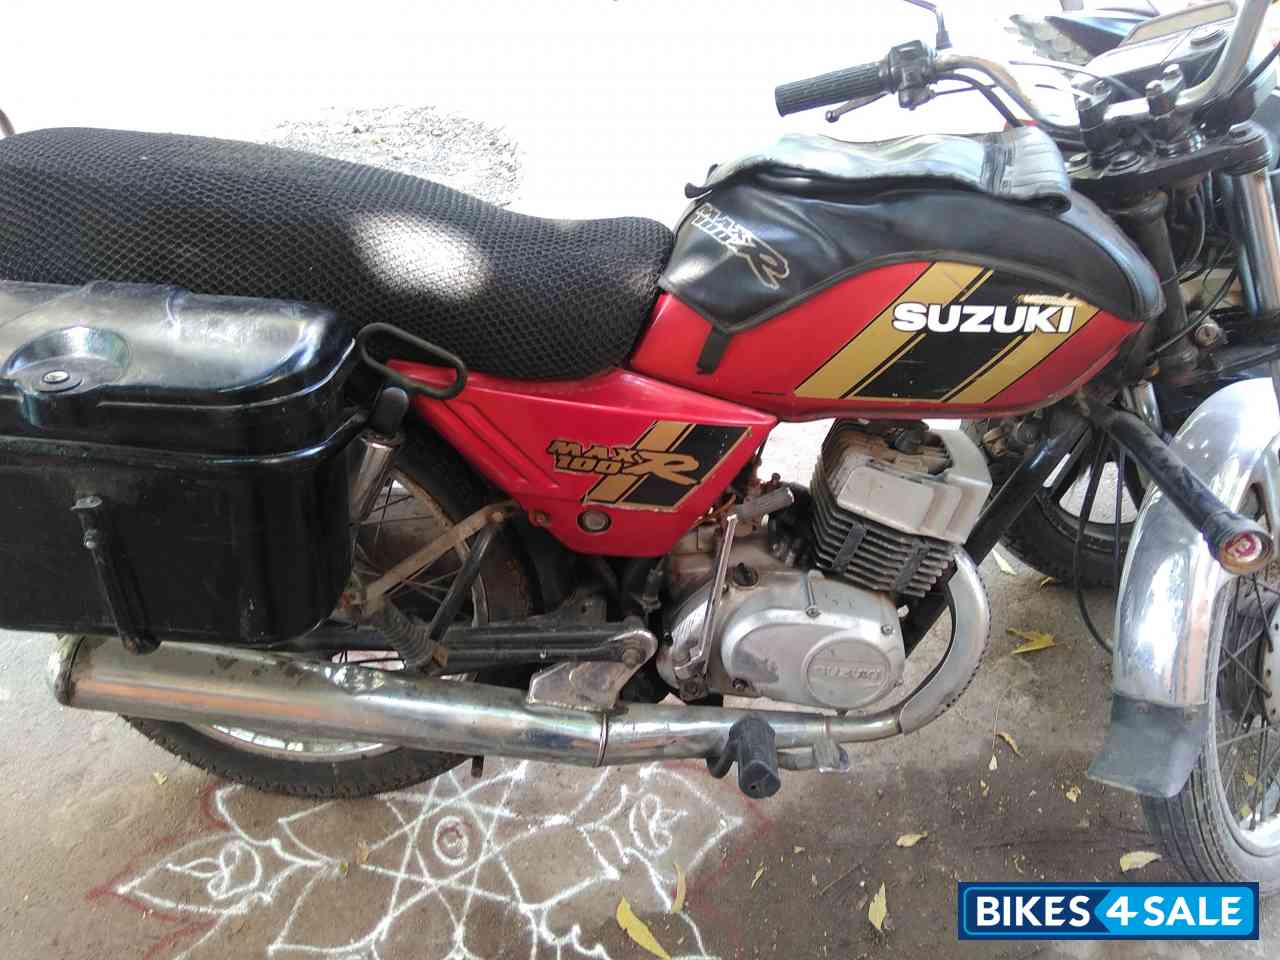 Used 2001 model Suzuki MAX 100R for sale in Chennai. ID 166173. Black ...